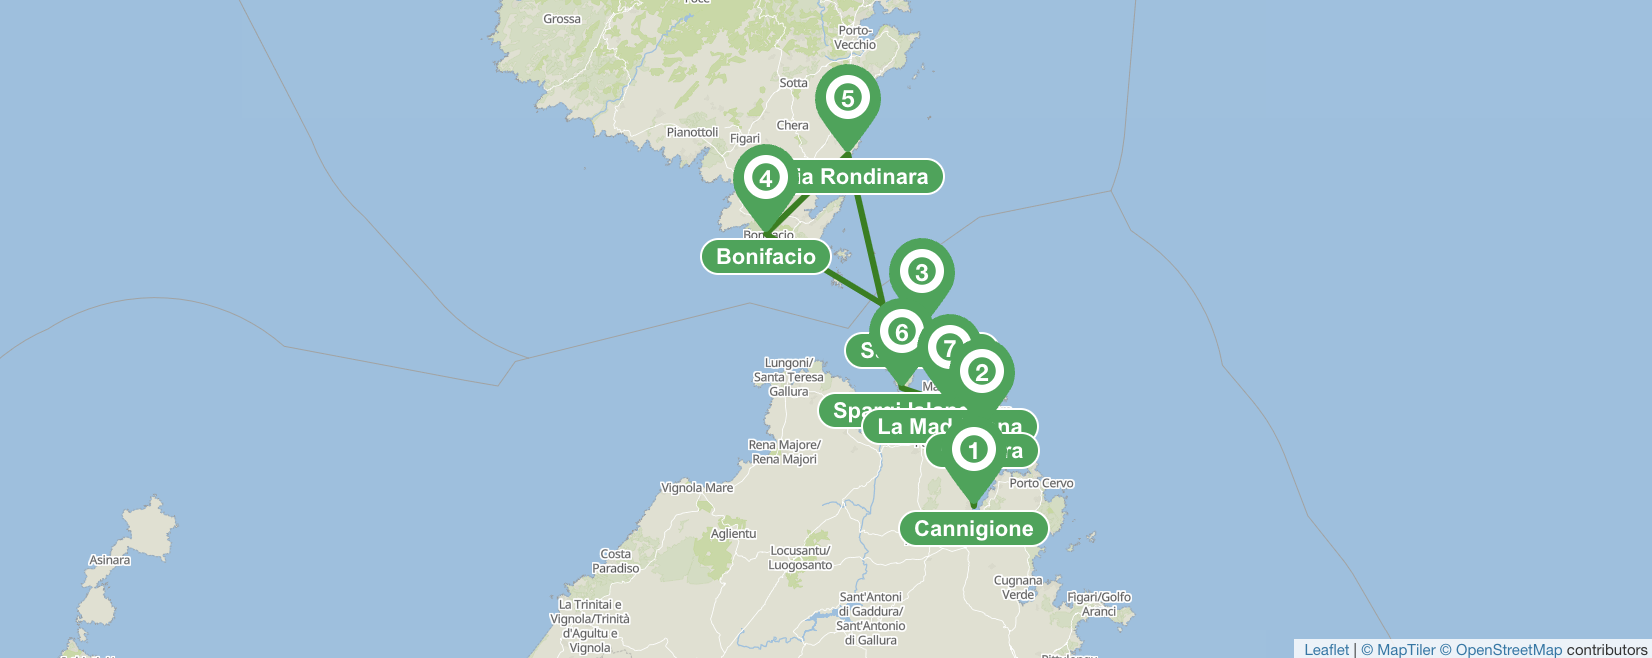 Itinerario di navigazione Sardegna-Corsica di 7 giorni